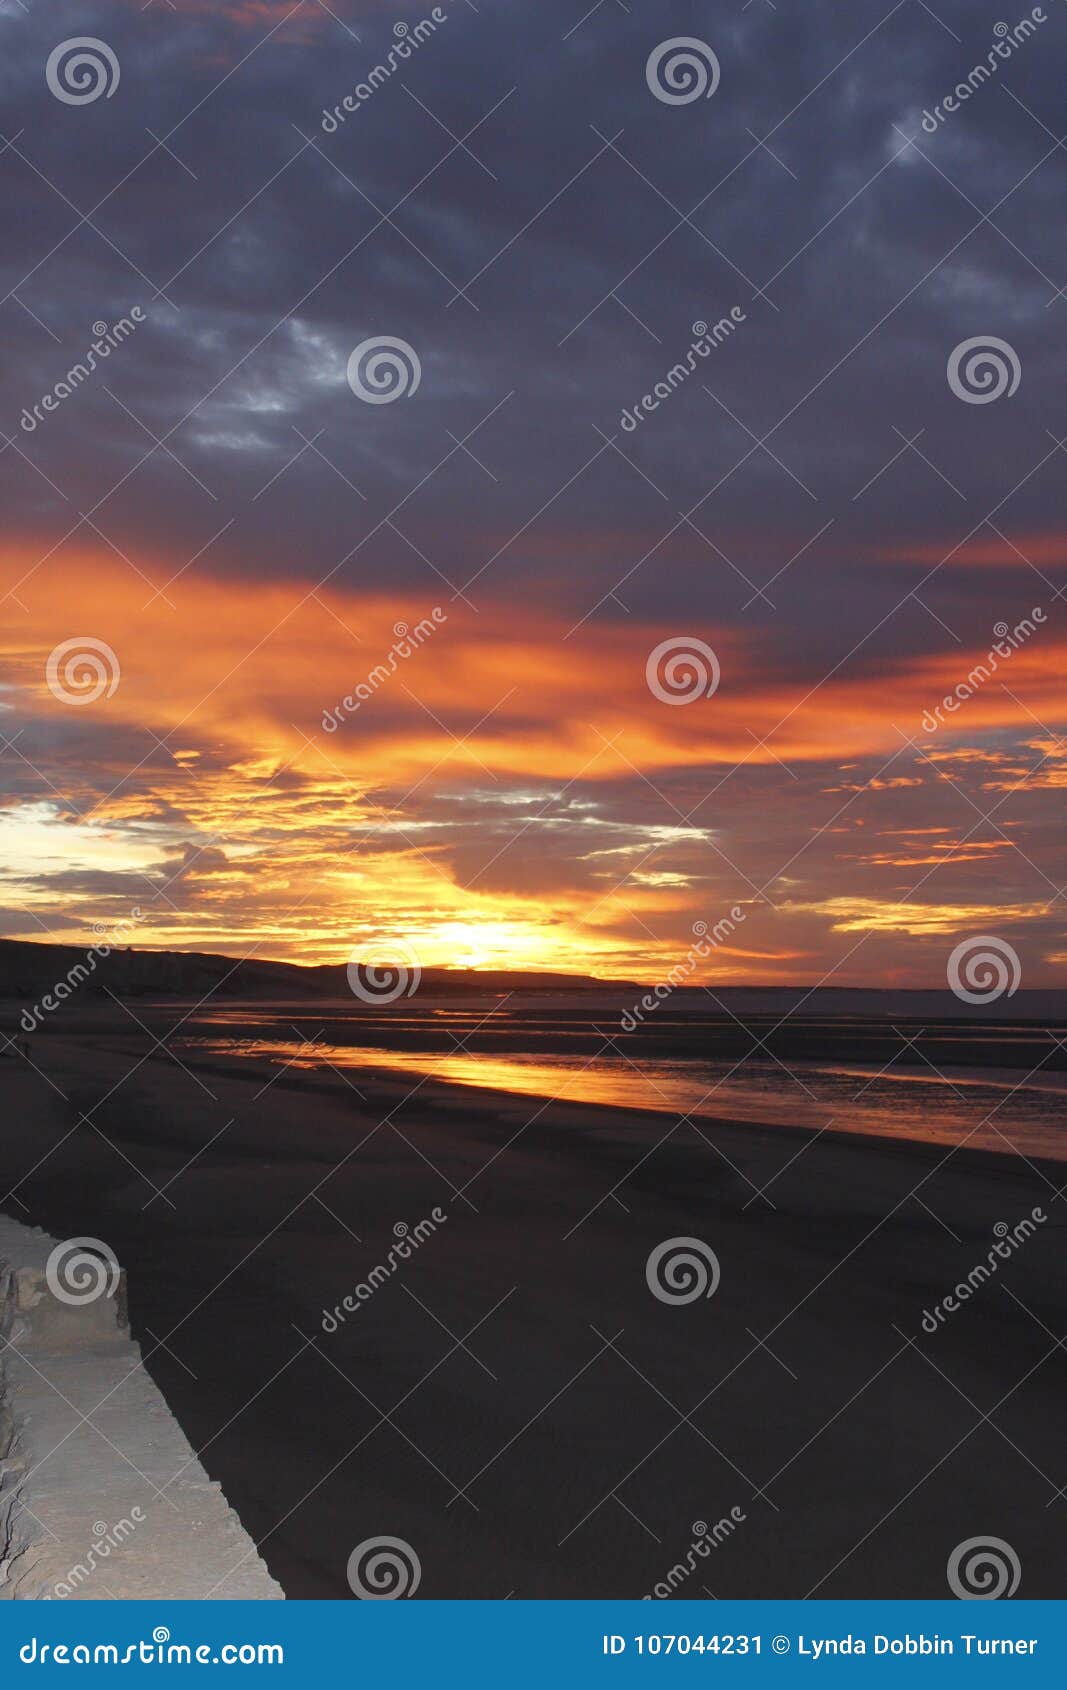 sunrise in el golfo de santa clara, sonora, mexico